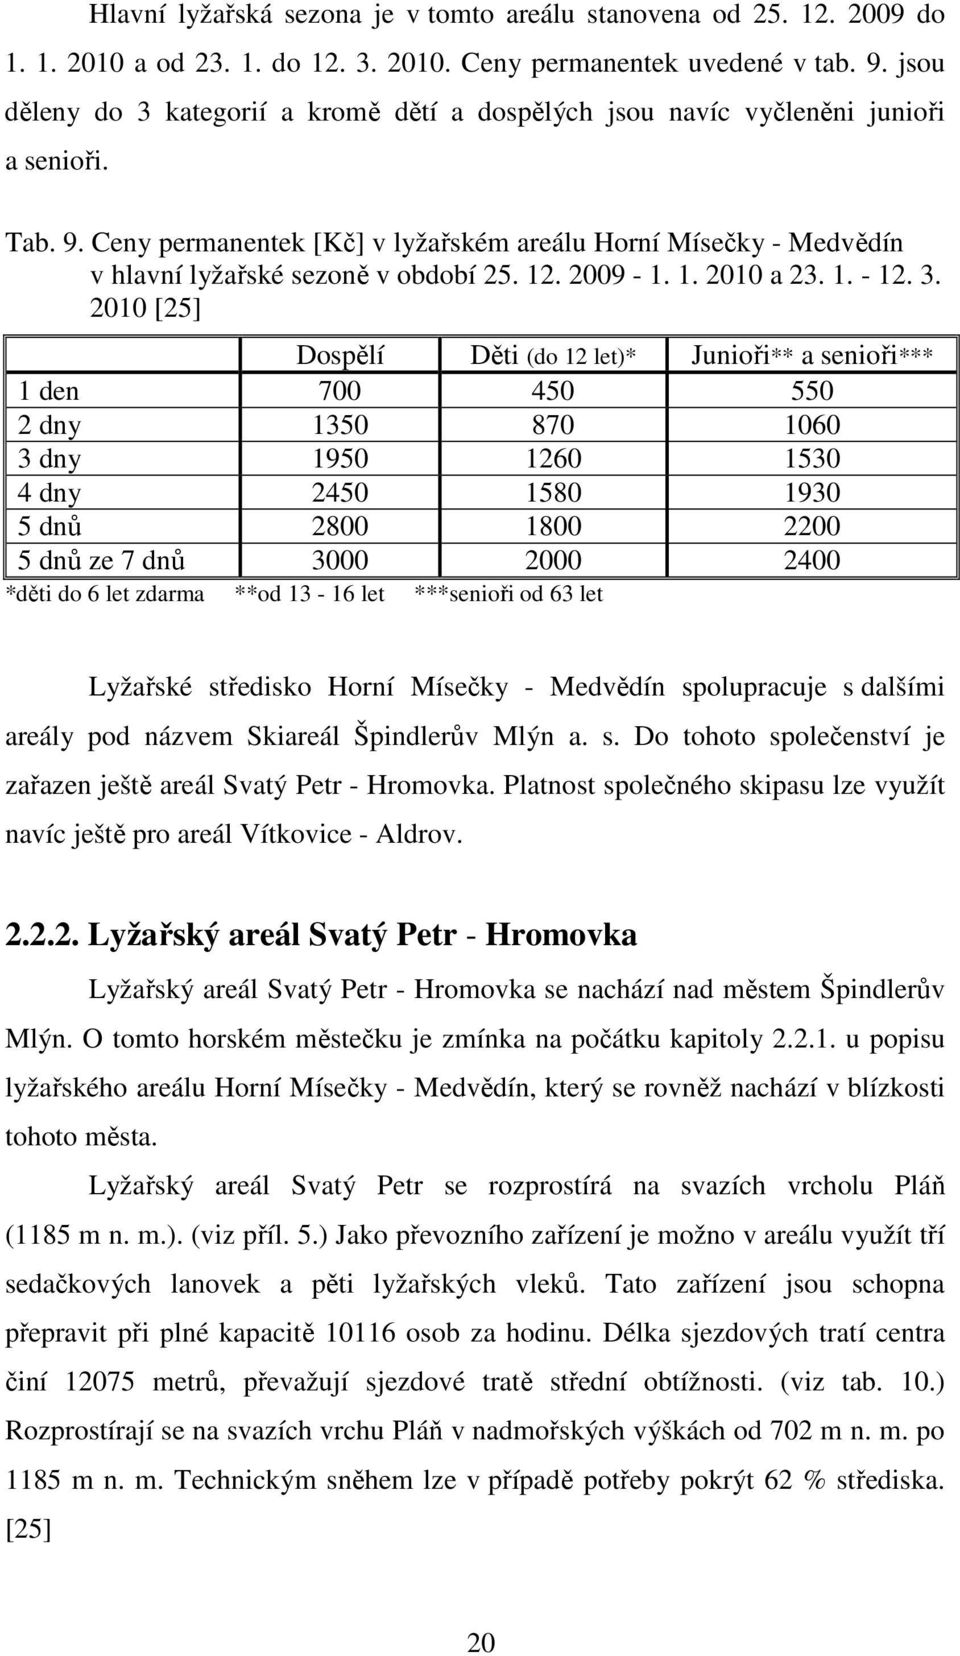 Ceny permanentek [Kč] v lyžařském areálu Horní Mísečky - Medvědín v hlavní lyžařské sezoně v období 25. 12. 2009-1. 1. 2010 a 23. 1. - 12. 3.